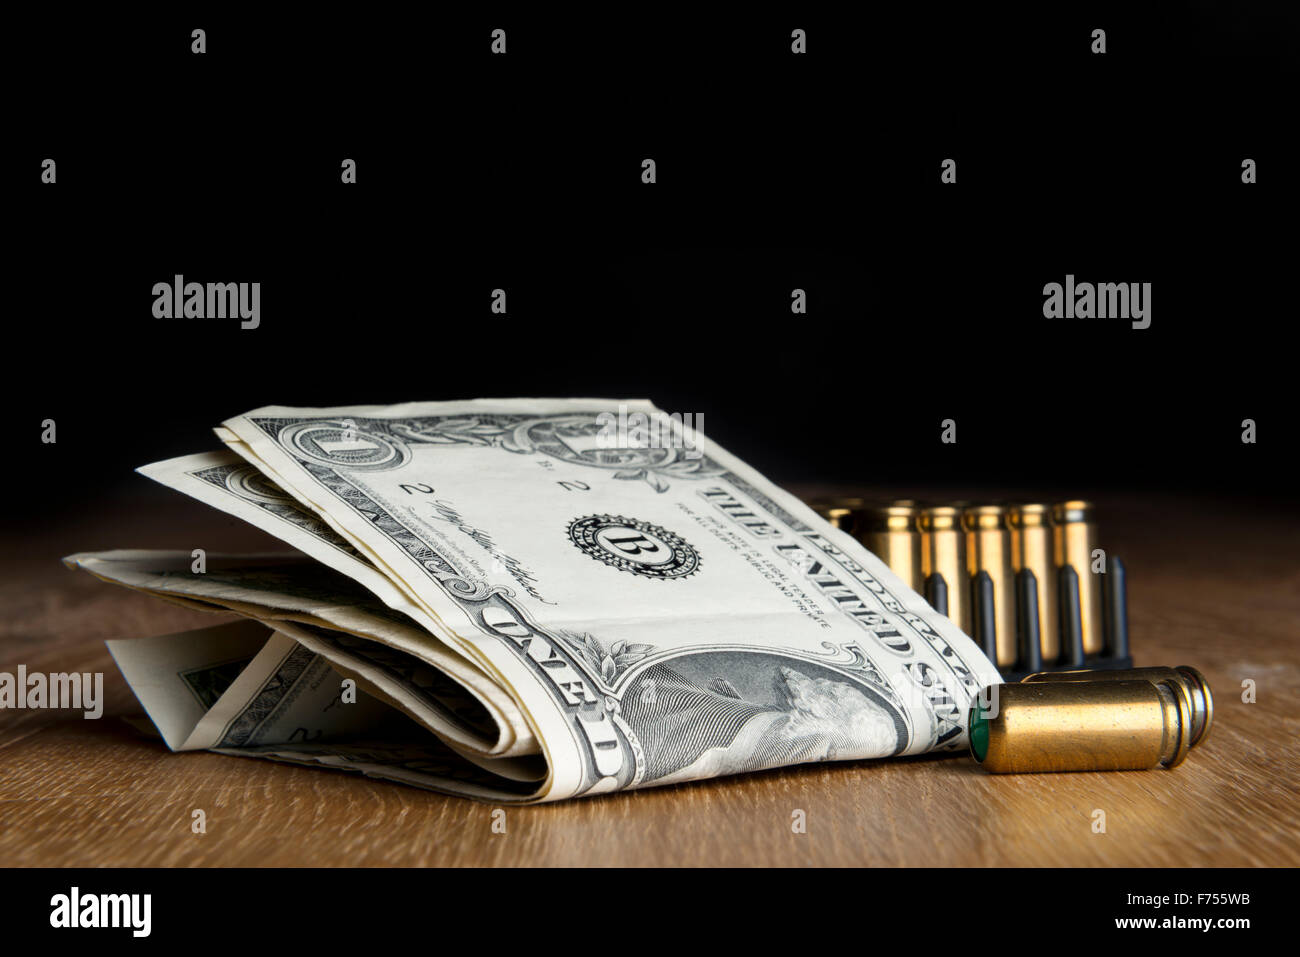 Image de dollar bills de pistolets cartouches sur une table Banque D'Images